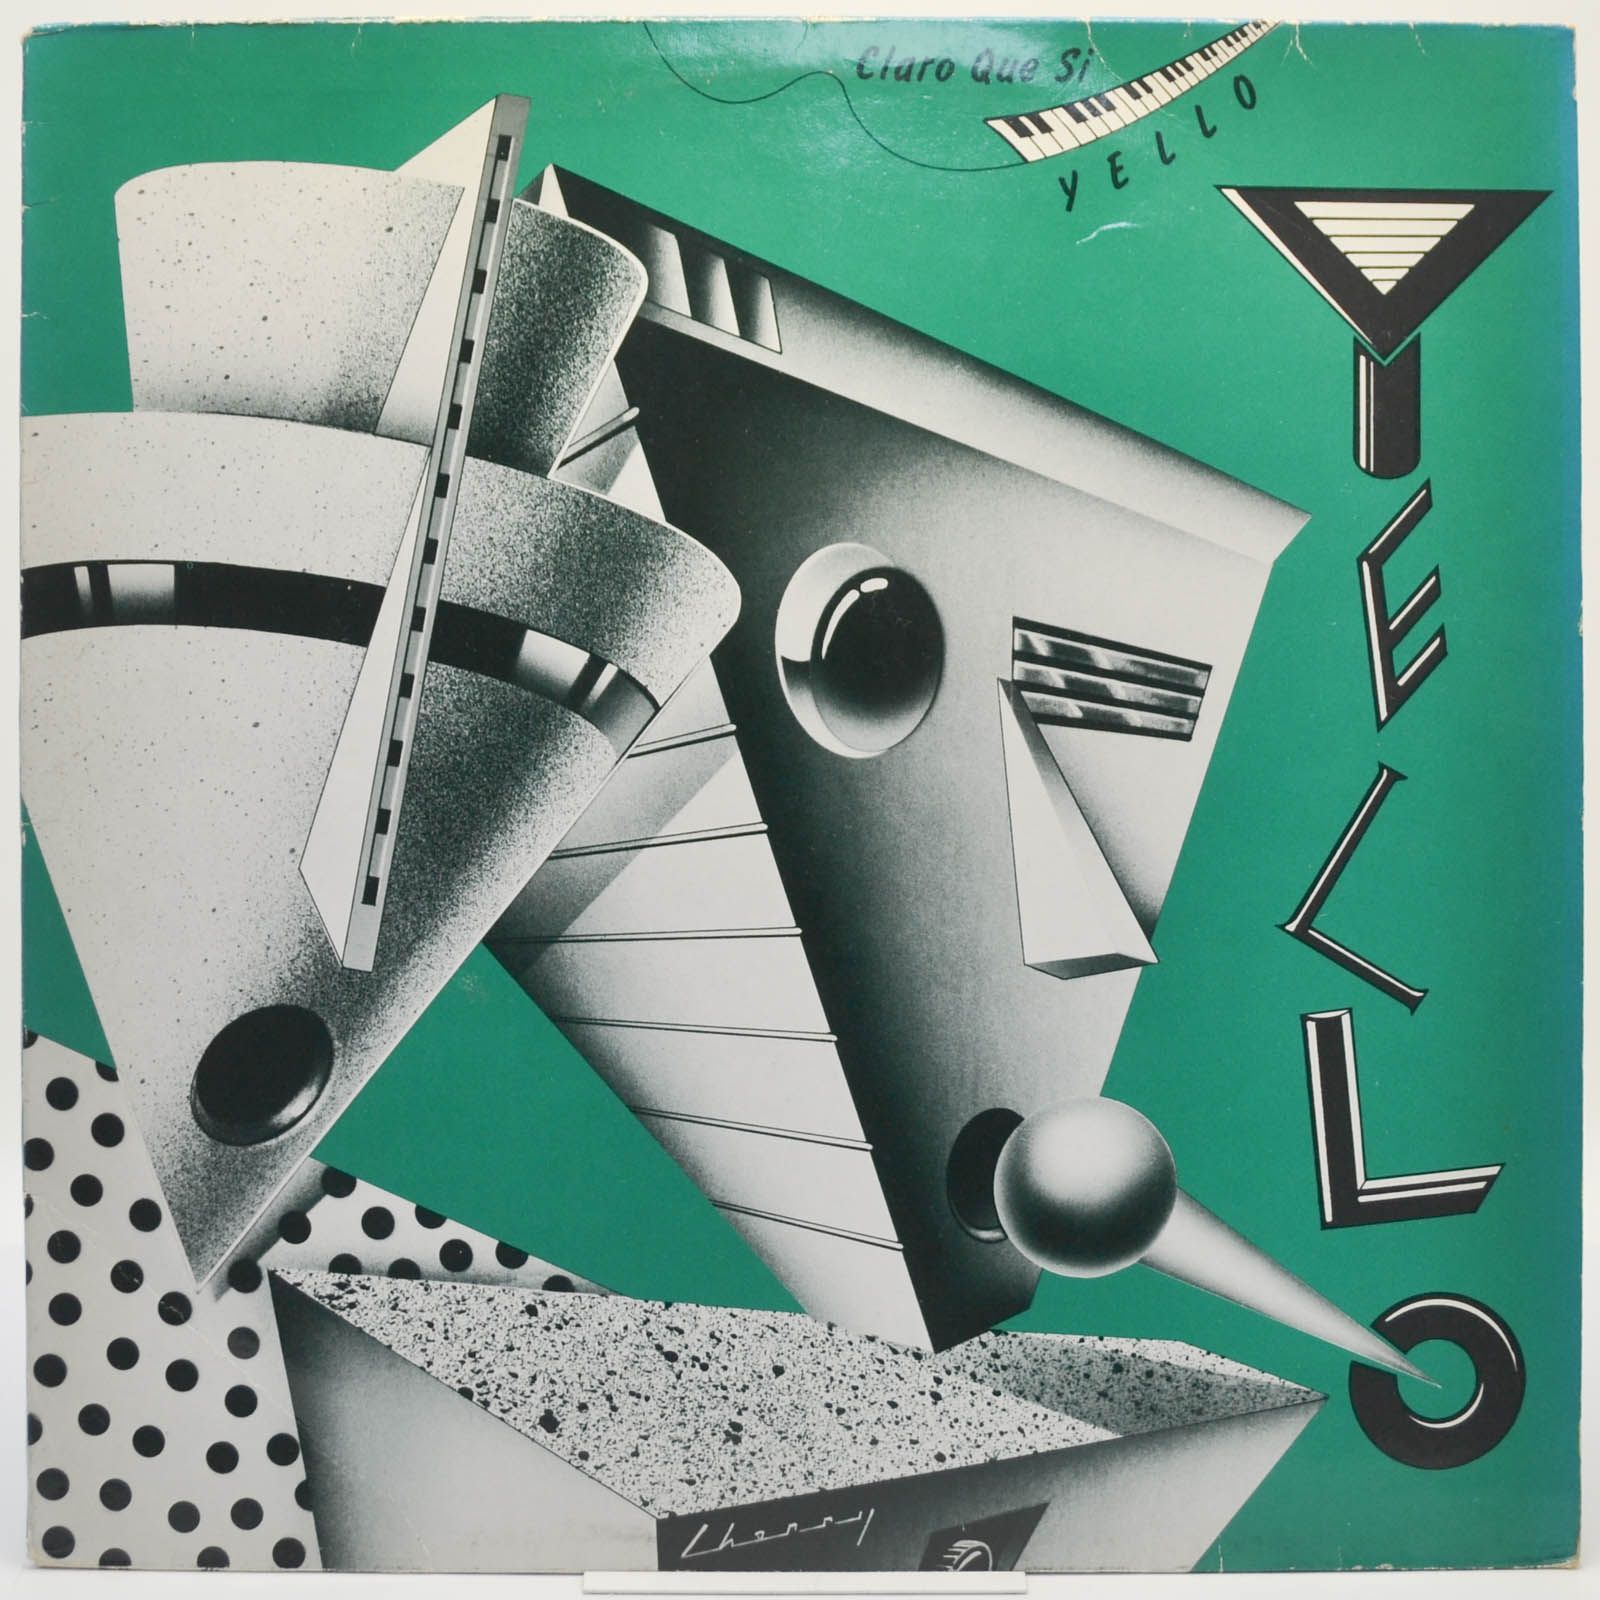 Yello — Claro Que Si, 1981